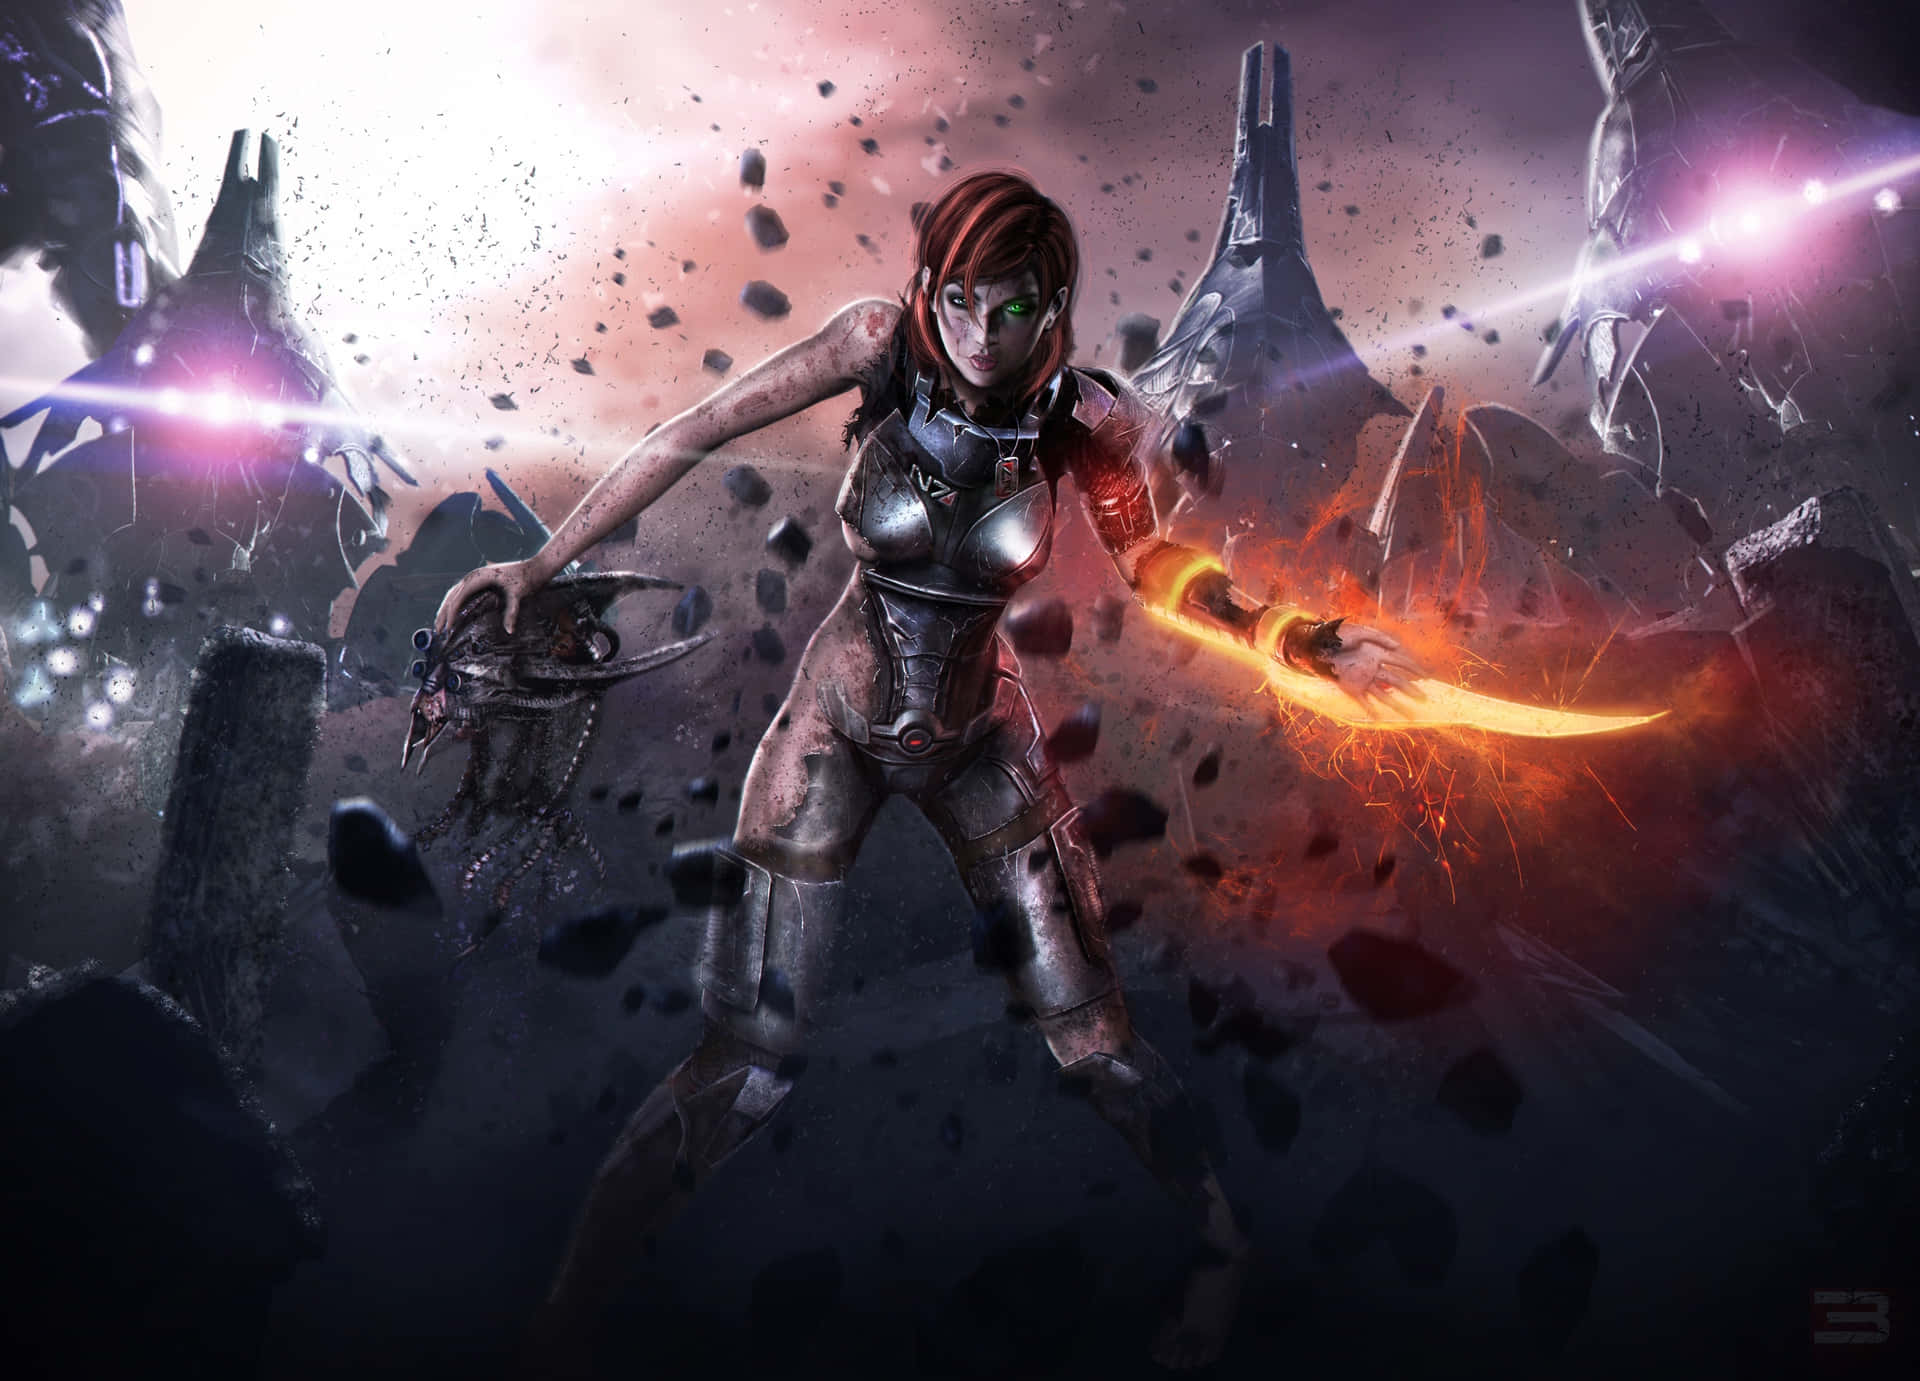 Commander Shepard in action Wallpaper